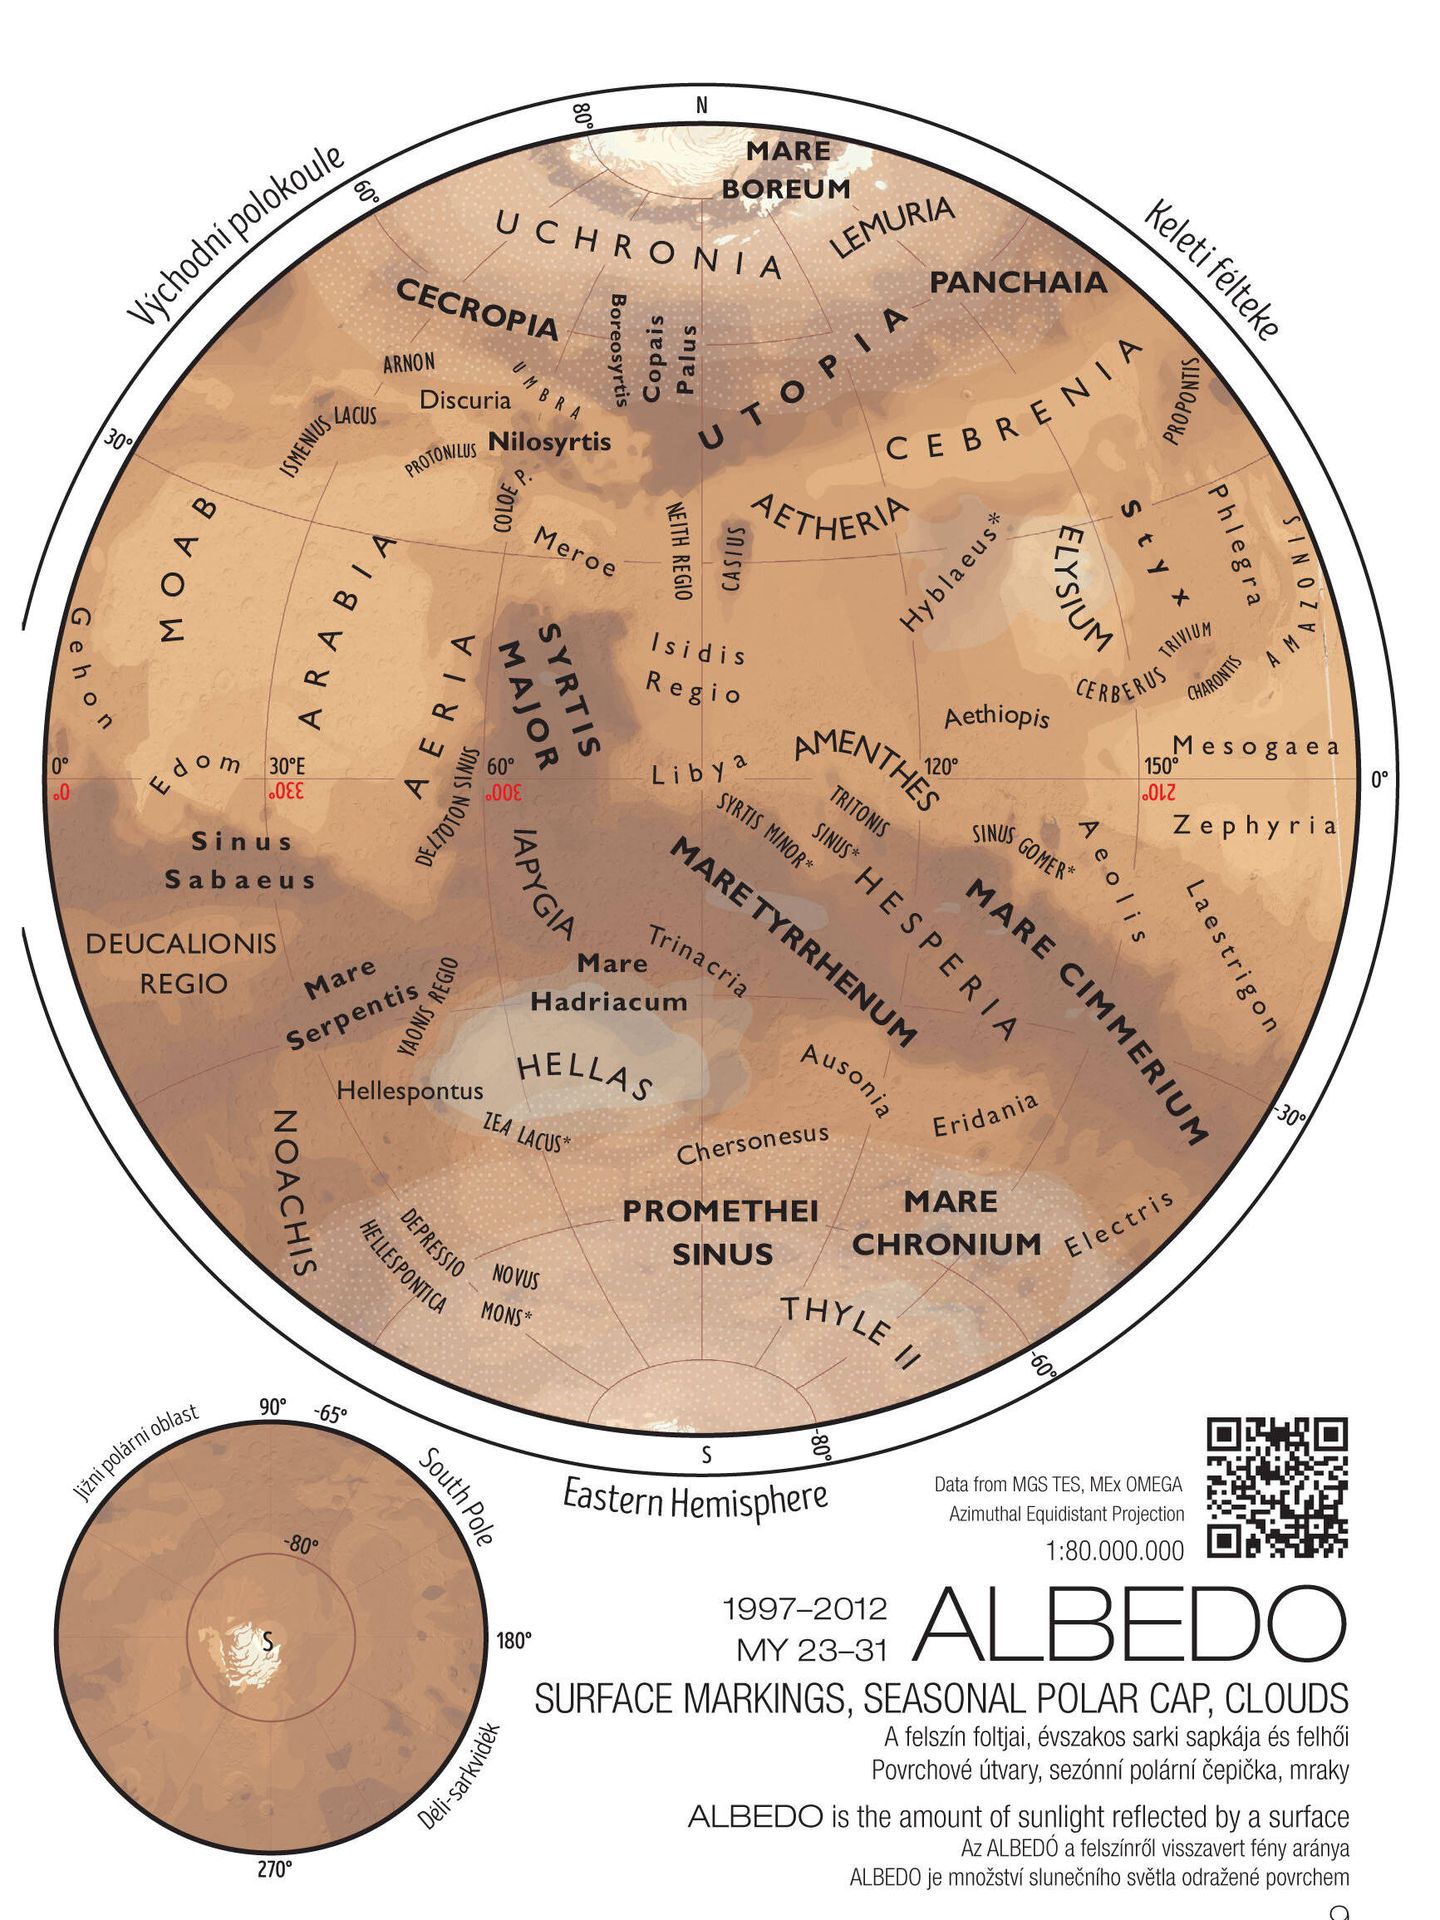 Mapa del albedo marciano, el índice de reflectividad del planeta (Europlanet Society)